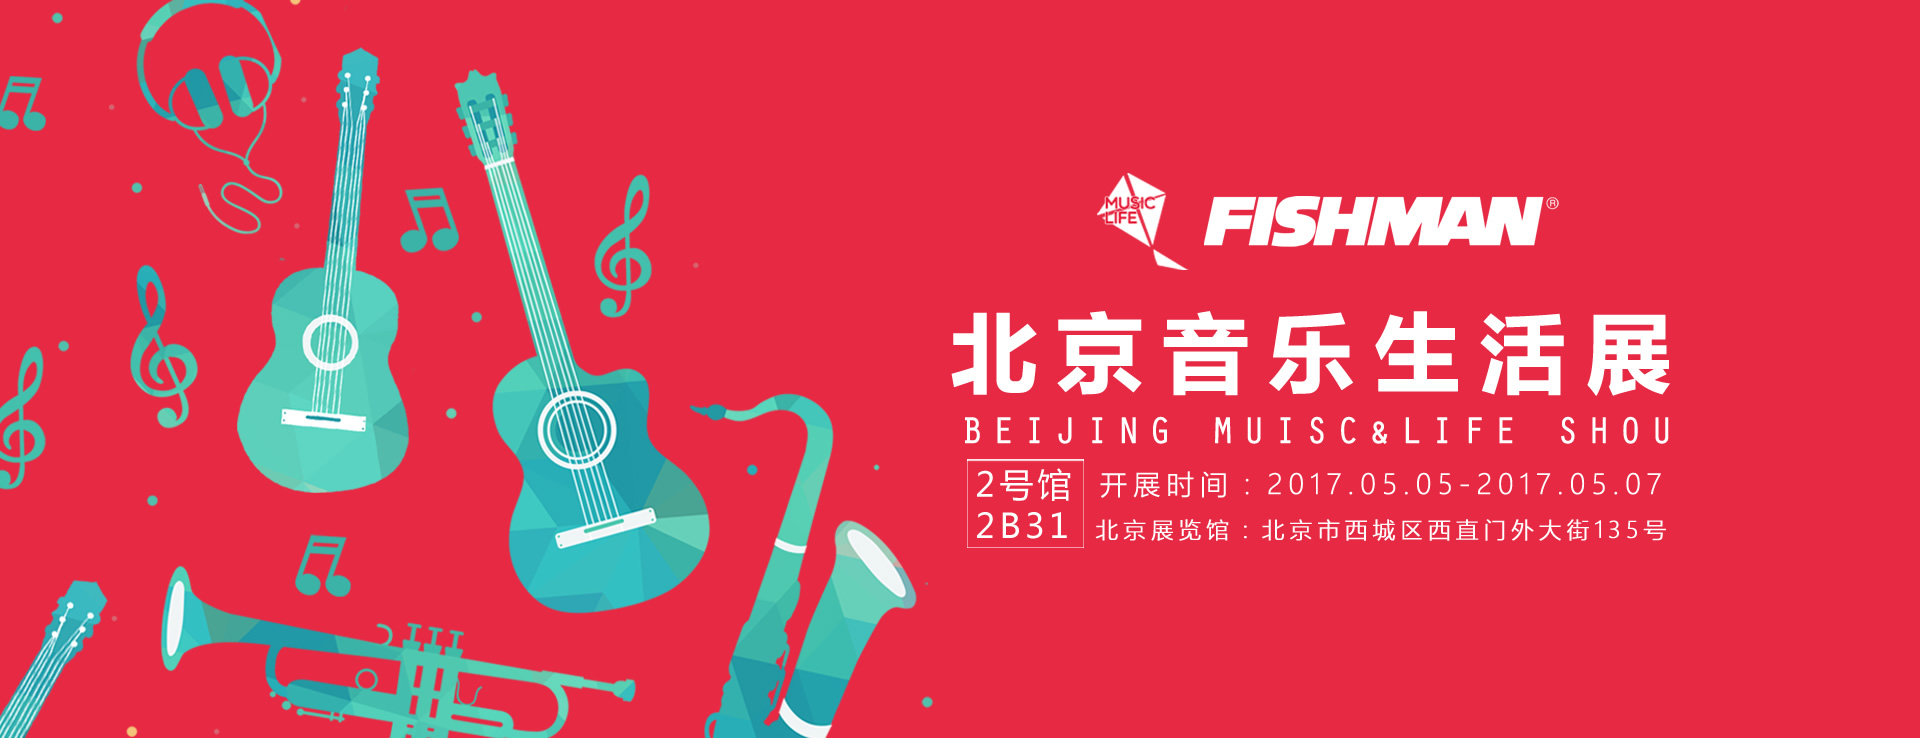 5月5日~5月7日,笛美音响及Fishman与你相约北京音乐生活展